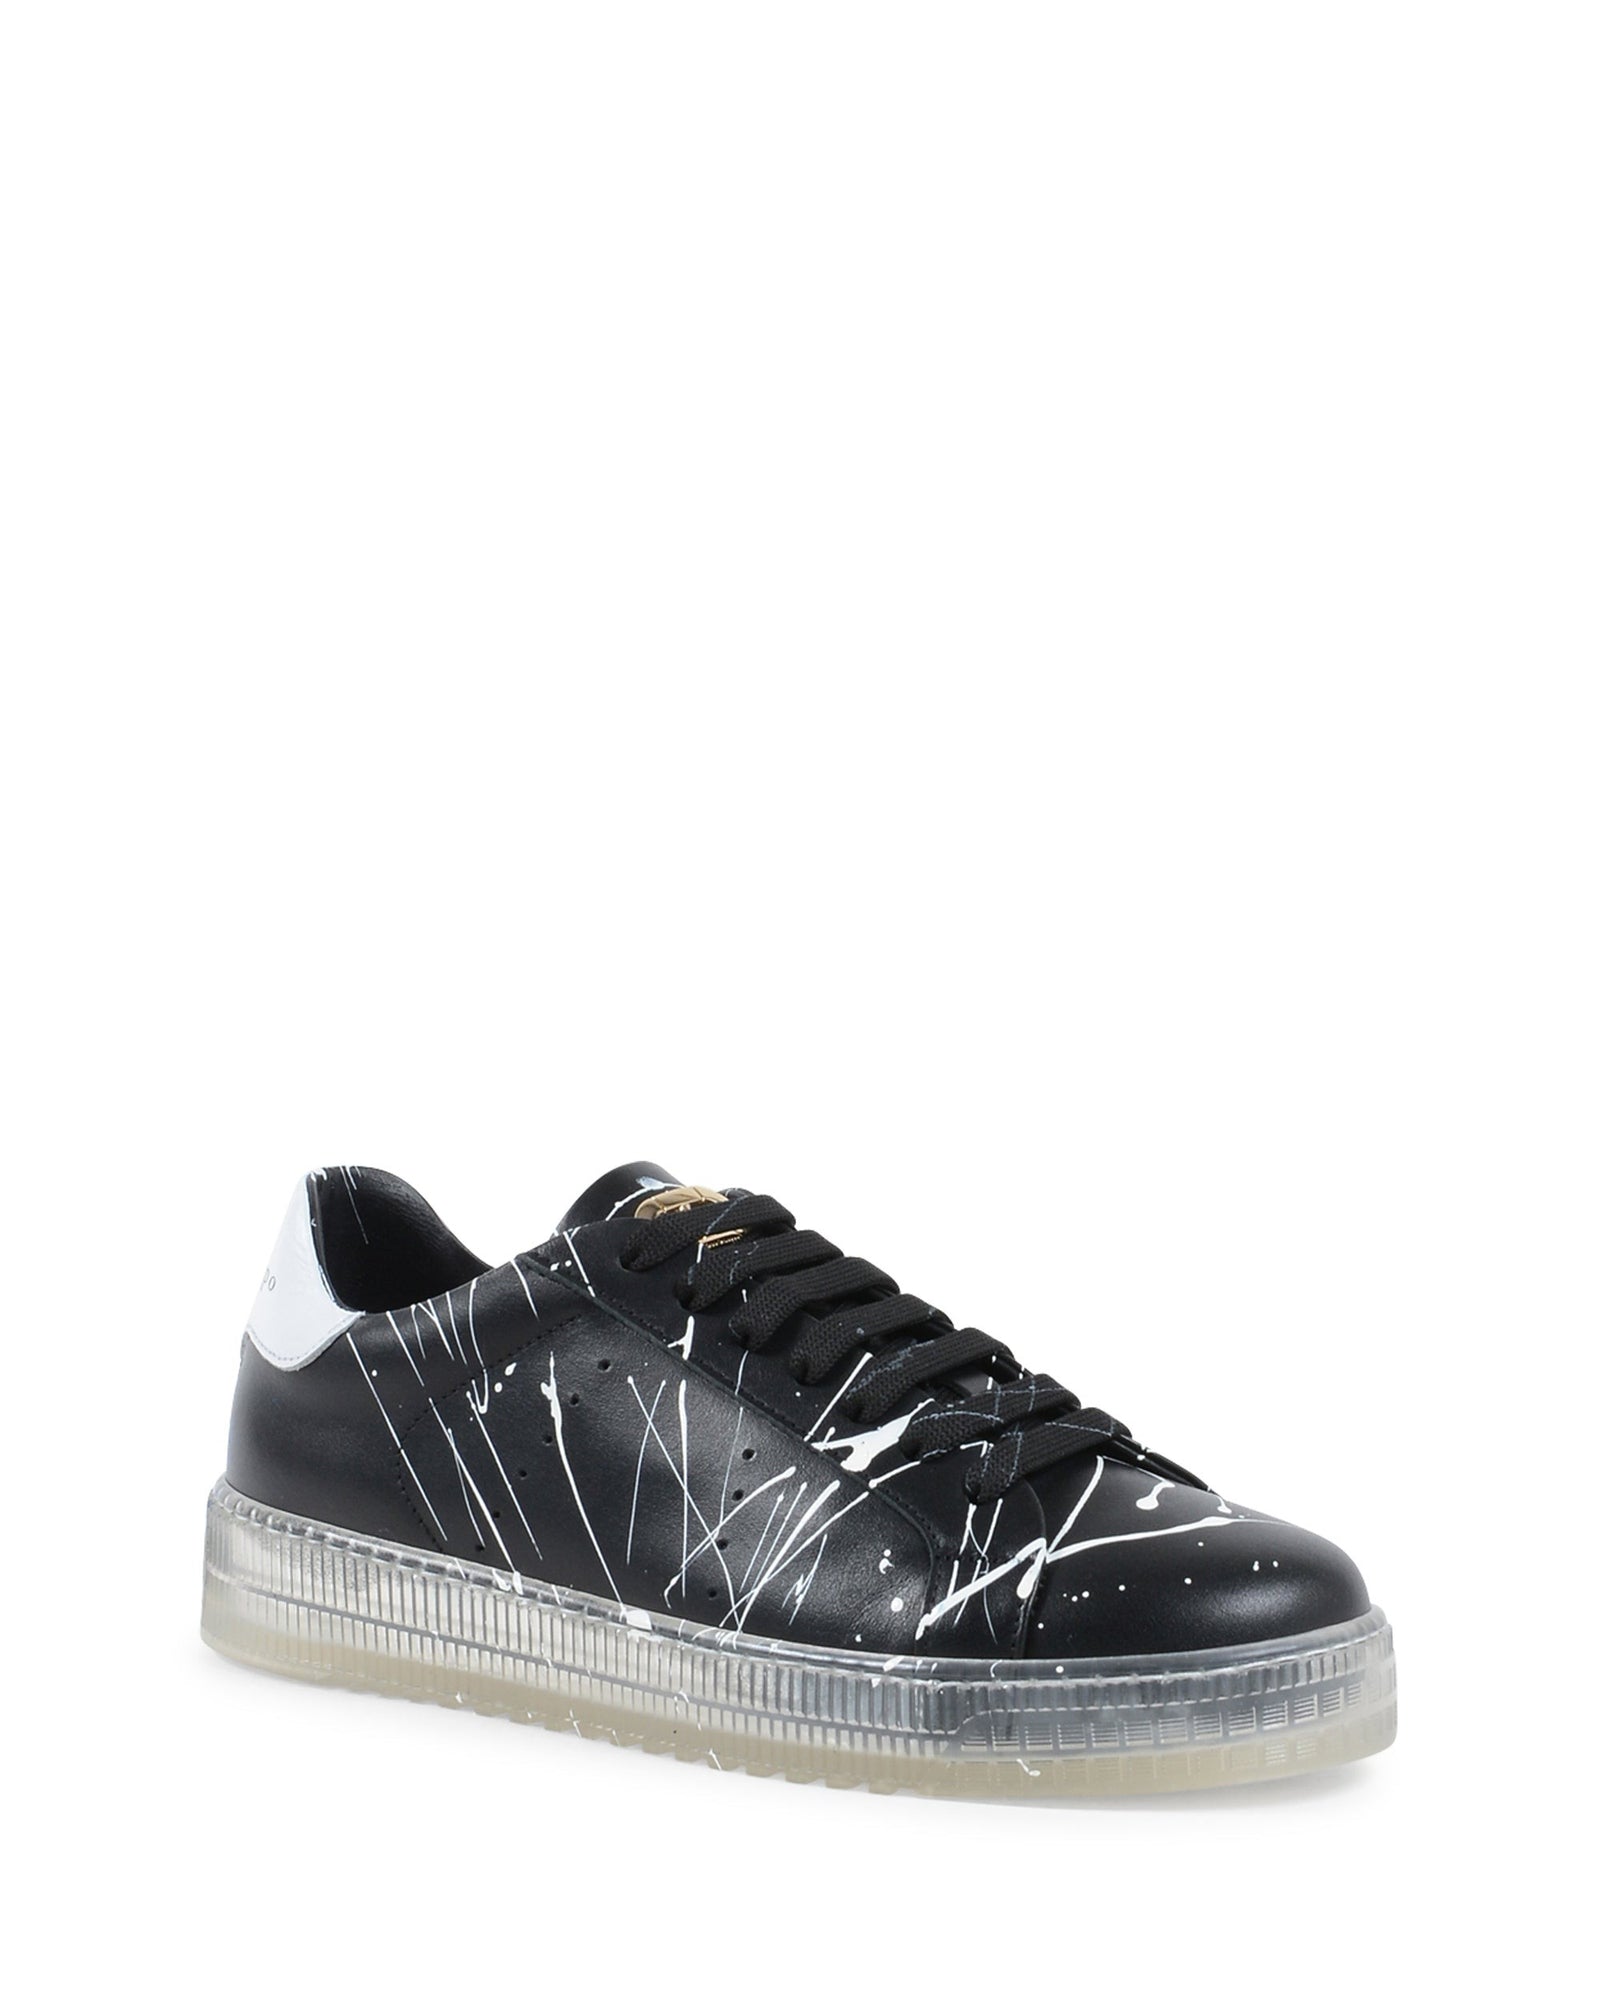 Splatter Sneaker - Black White